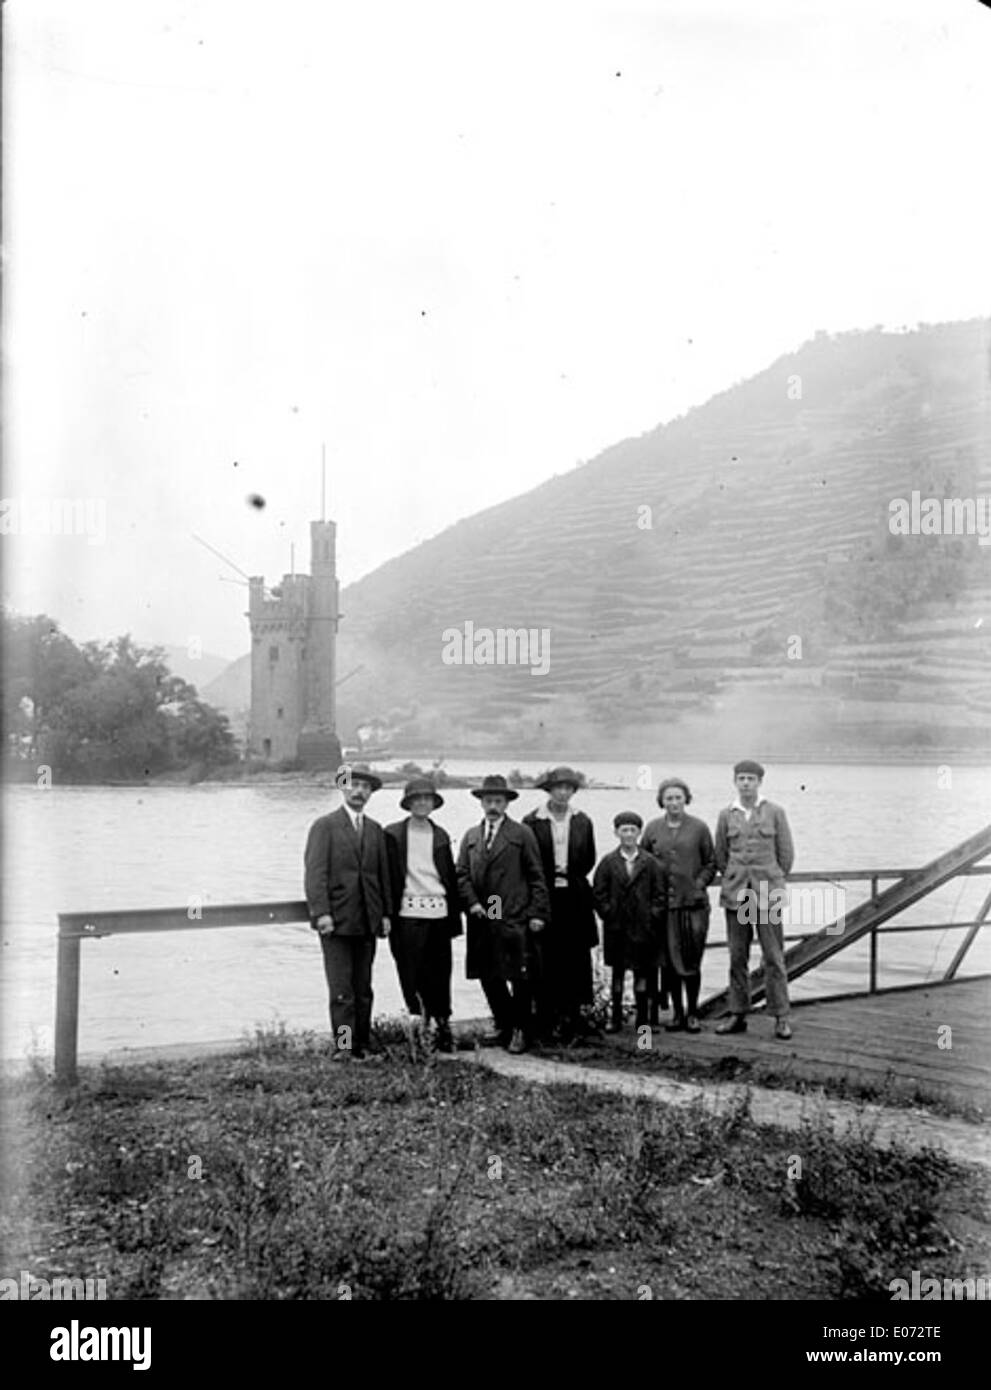 Promeneurs au bord du Rhin avec la Tour Mauseturm en arrière-plan, Bingen (Rhénanie-Palatinat) Stock Photo